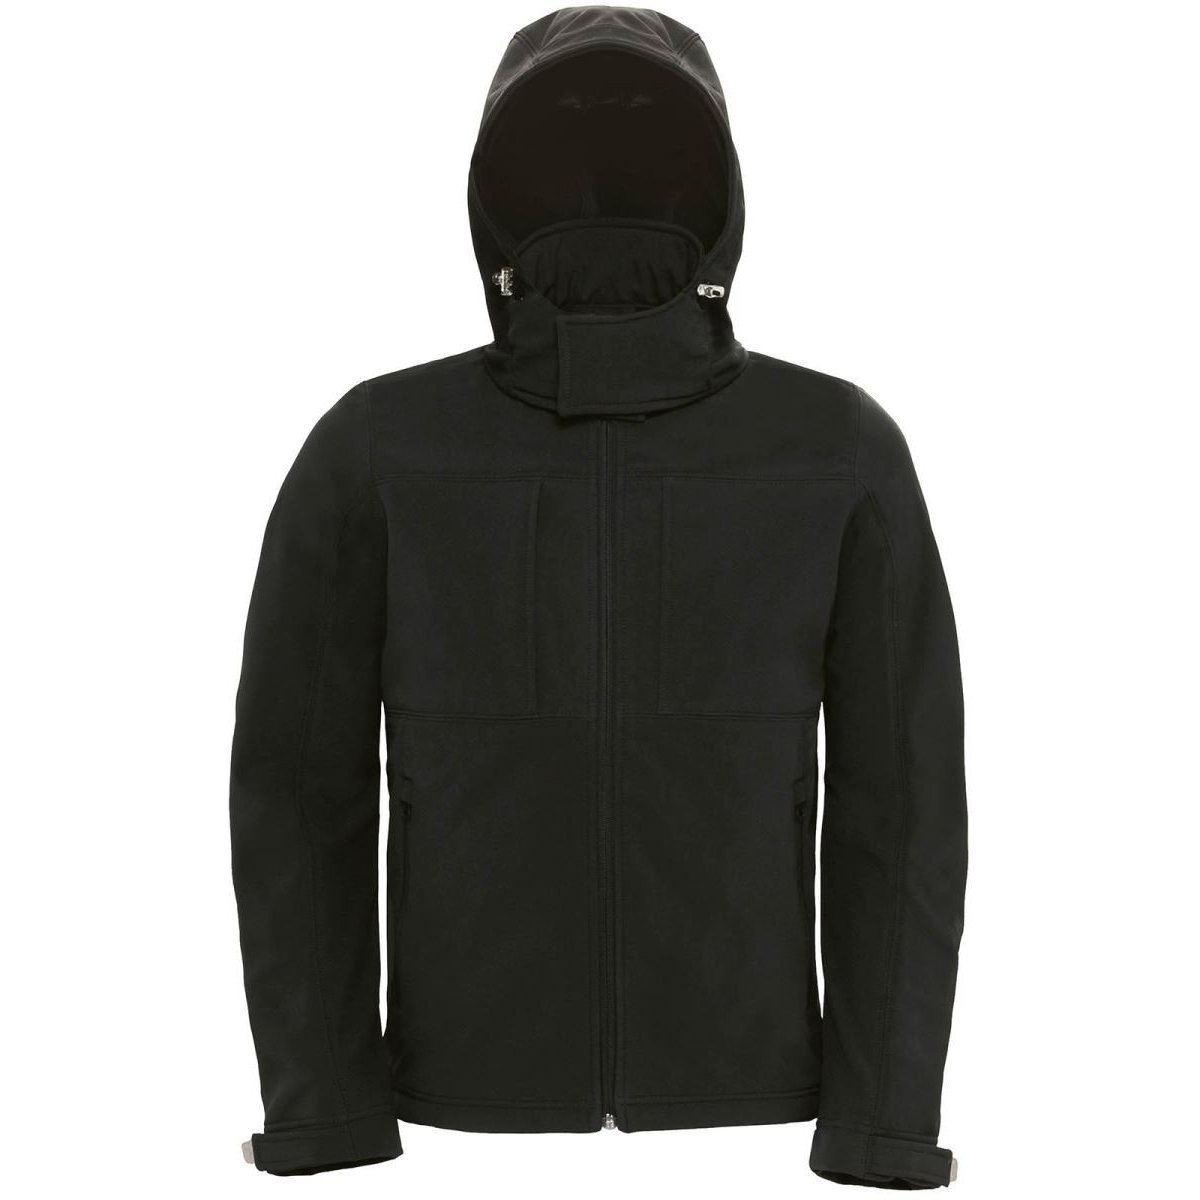 Pánská softshellová bunda s kapucí B&C Hooded Softshell - černá, XL